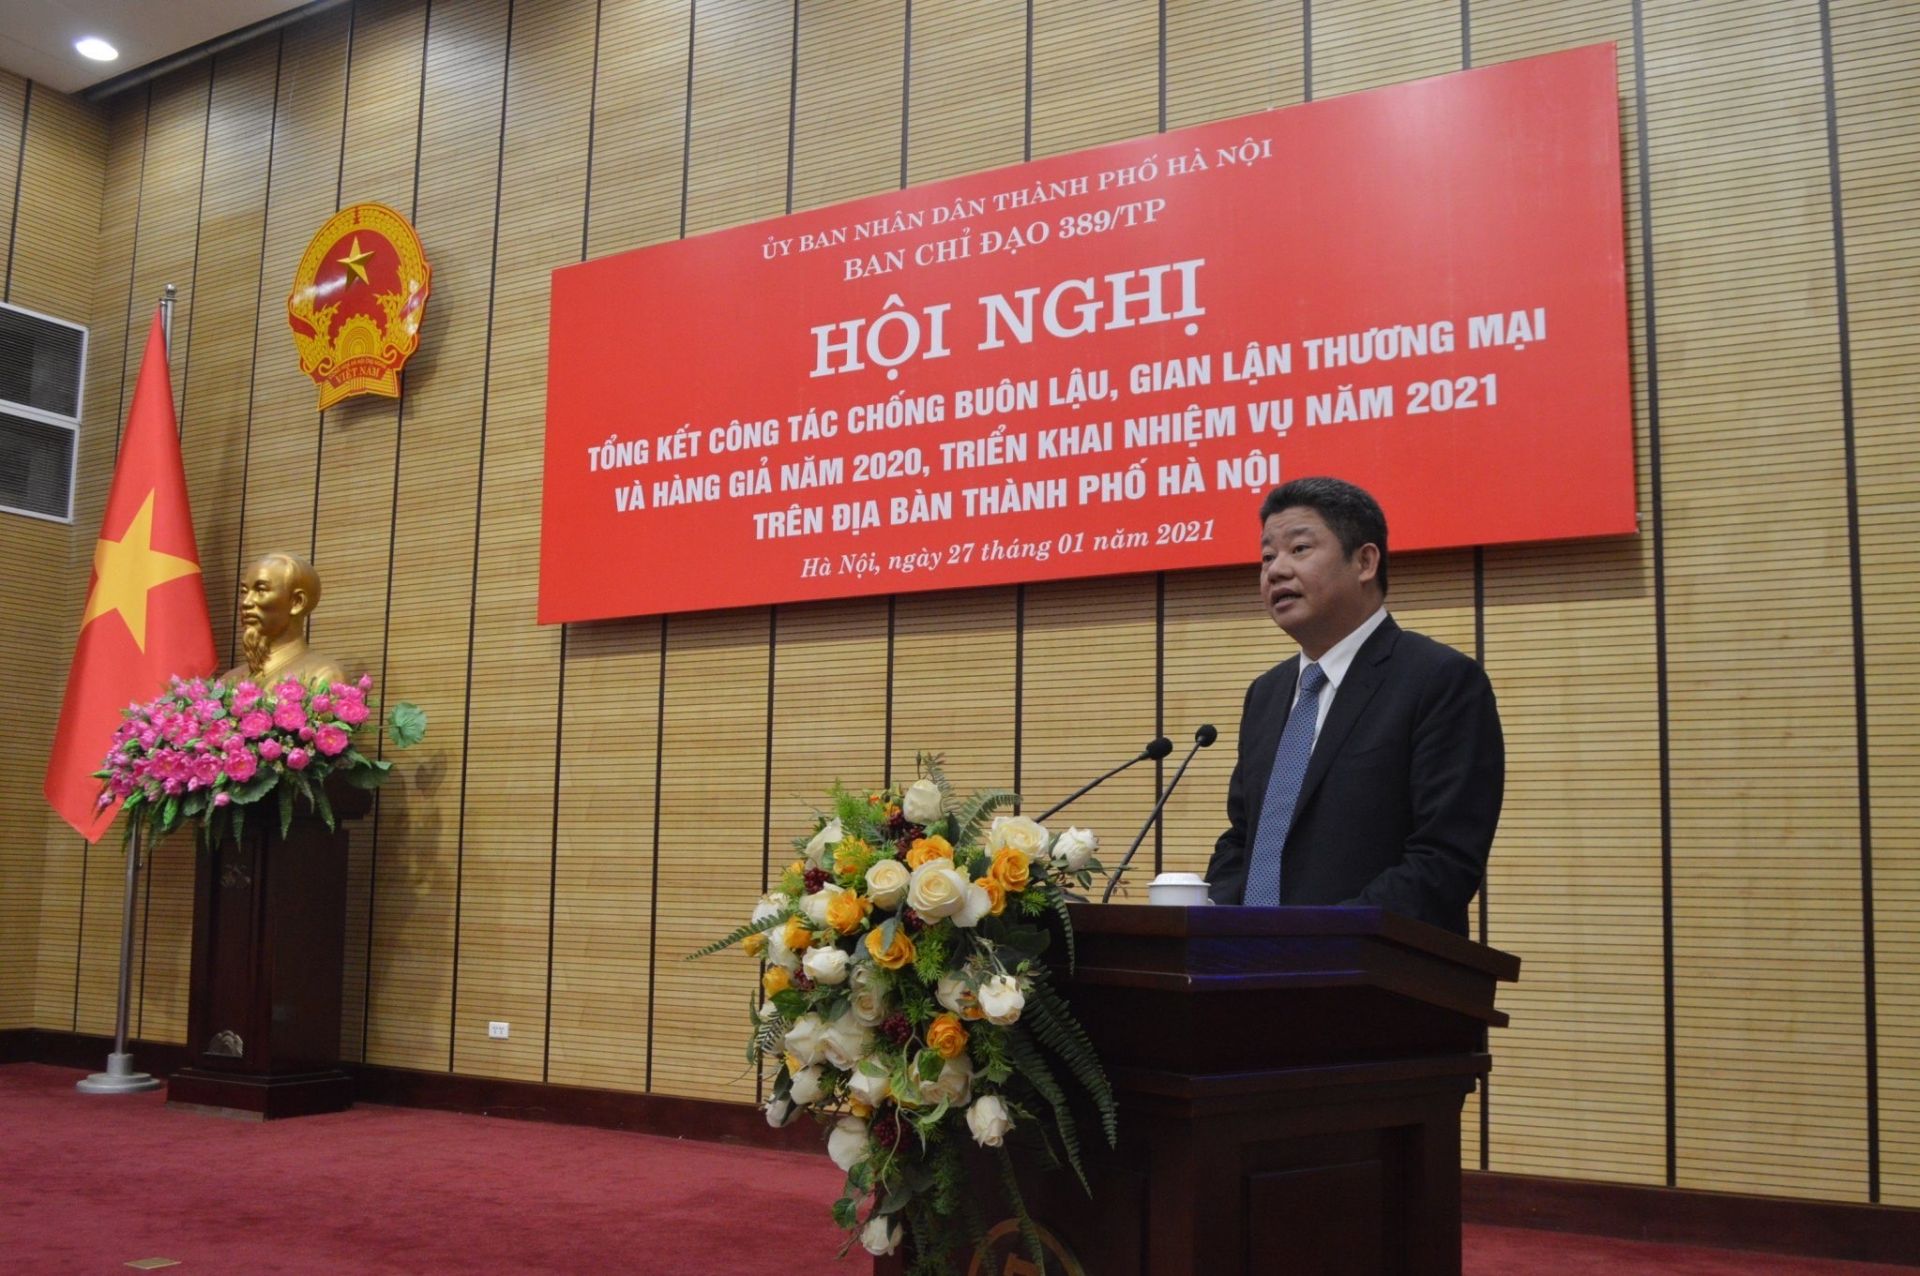 Đồng chí Nguyễn Mạnh Quyền, Thành ủy viên, Phó Chủ tịch UBND thành phố, Trưởng Ban Chỉ đạo 389 thành phố Hà Nội.